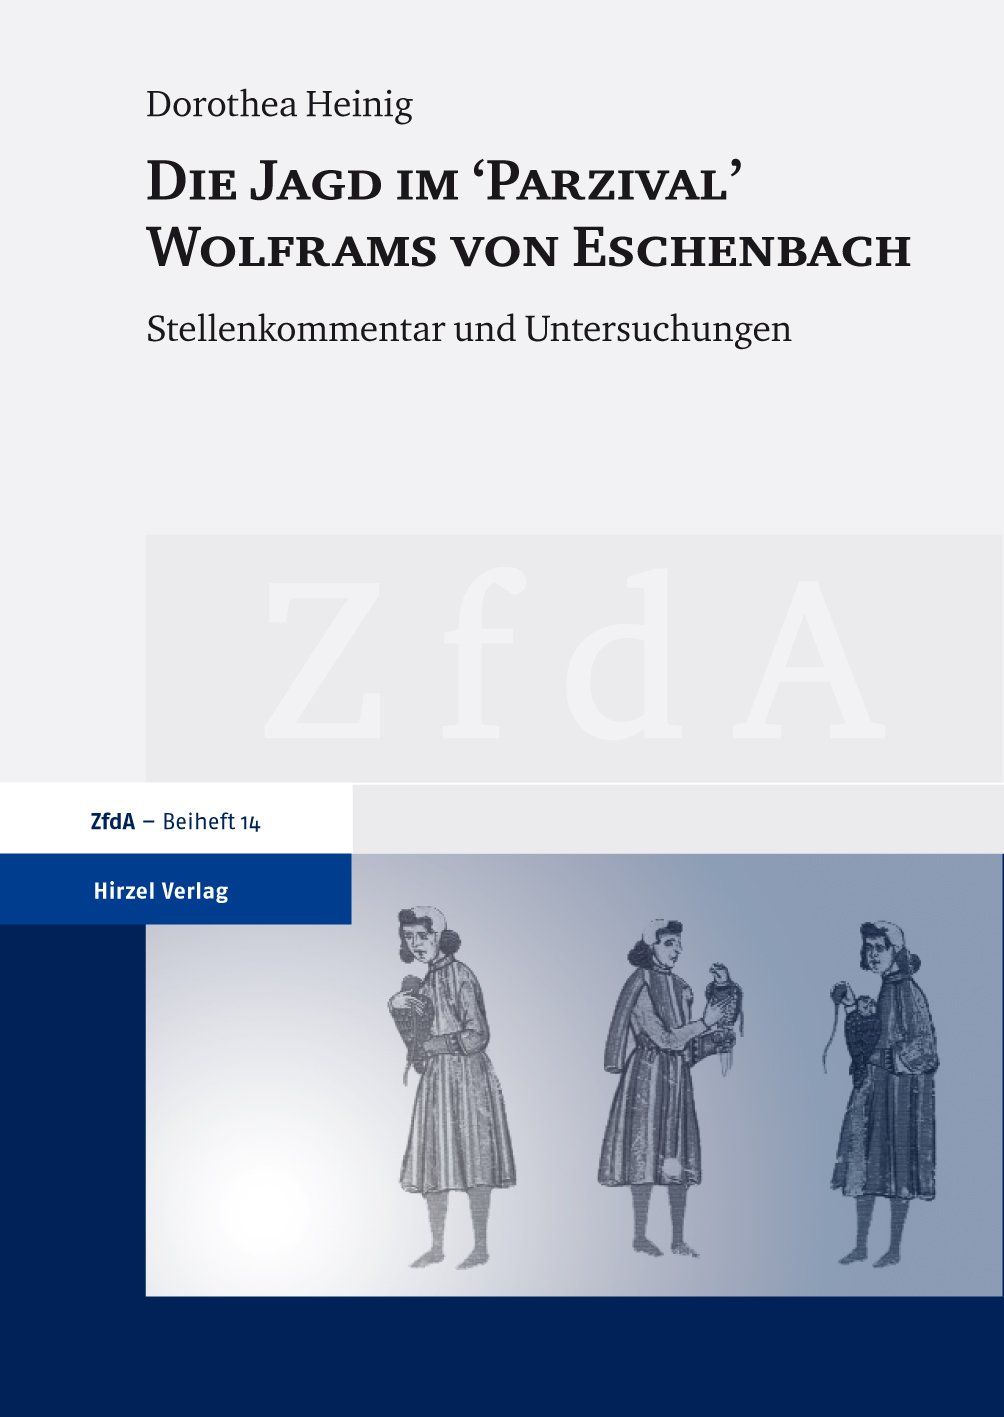 Die Jagd im "Parzival" Wolframs von Eschenbach